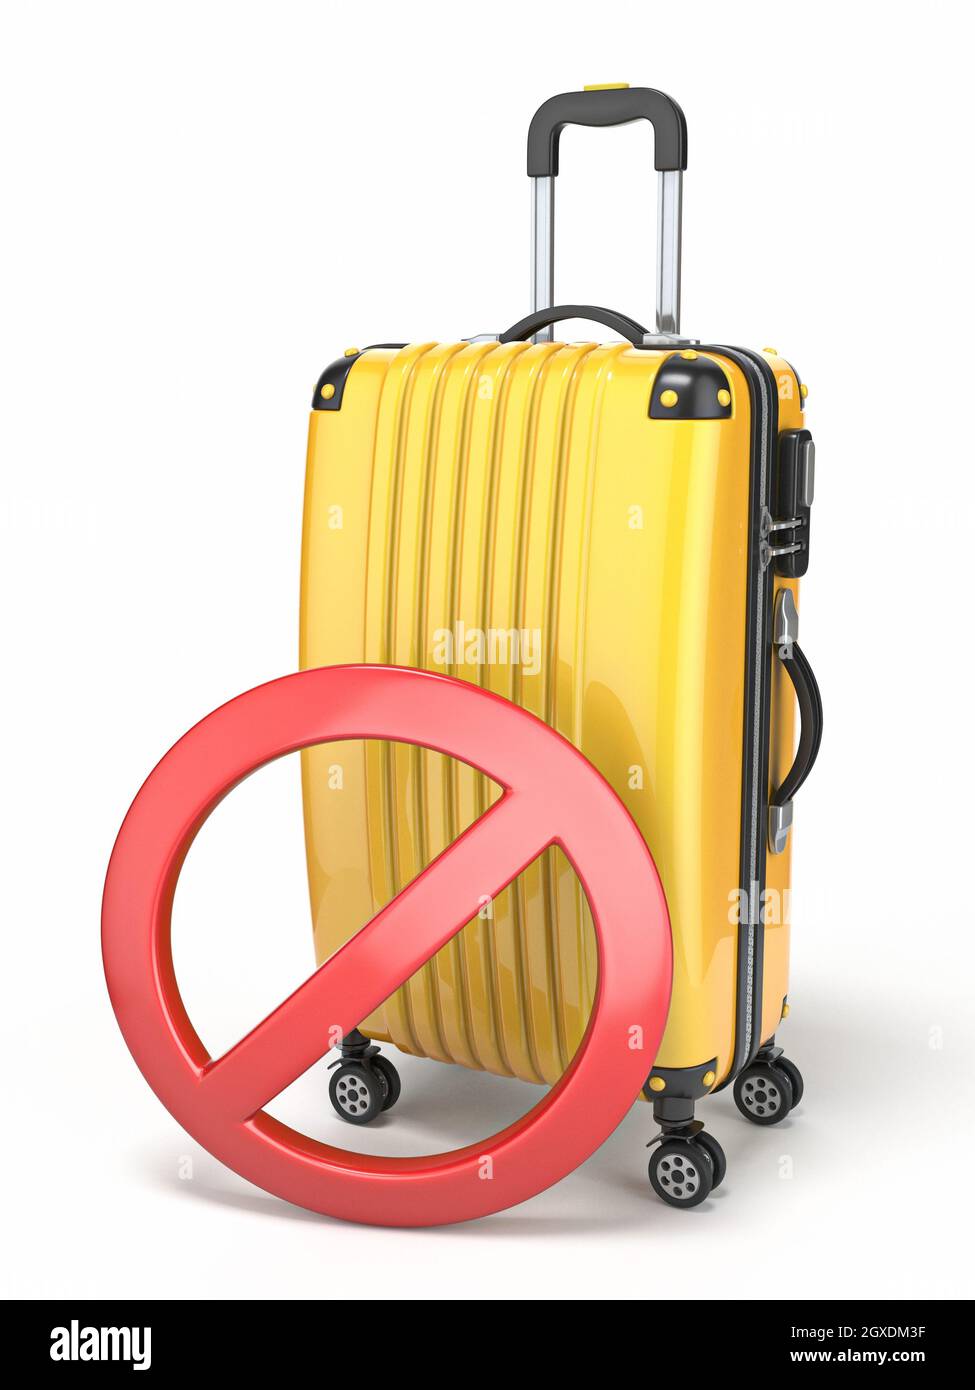 La maleta amarilla y el signo de prohibición del círculo rojo 3D muestran  una ilustración aislado sobre fondo blanco Fotografía de stock - Alamy